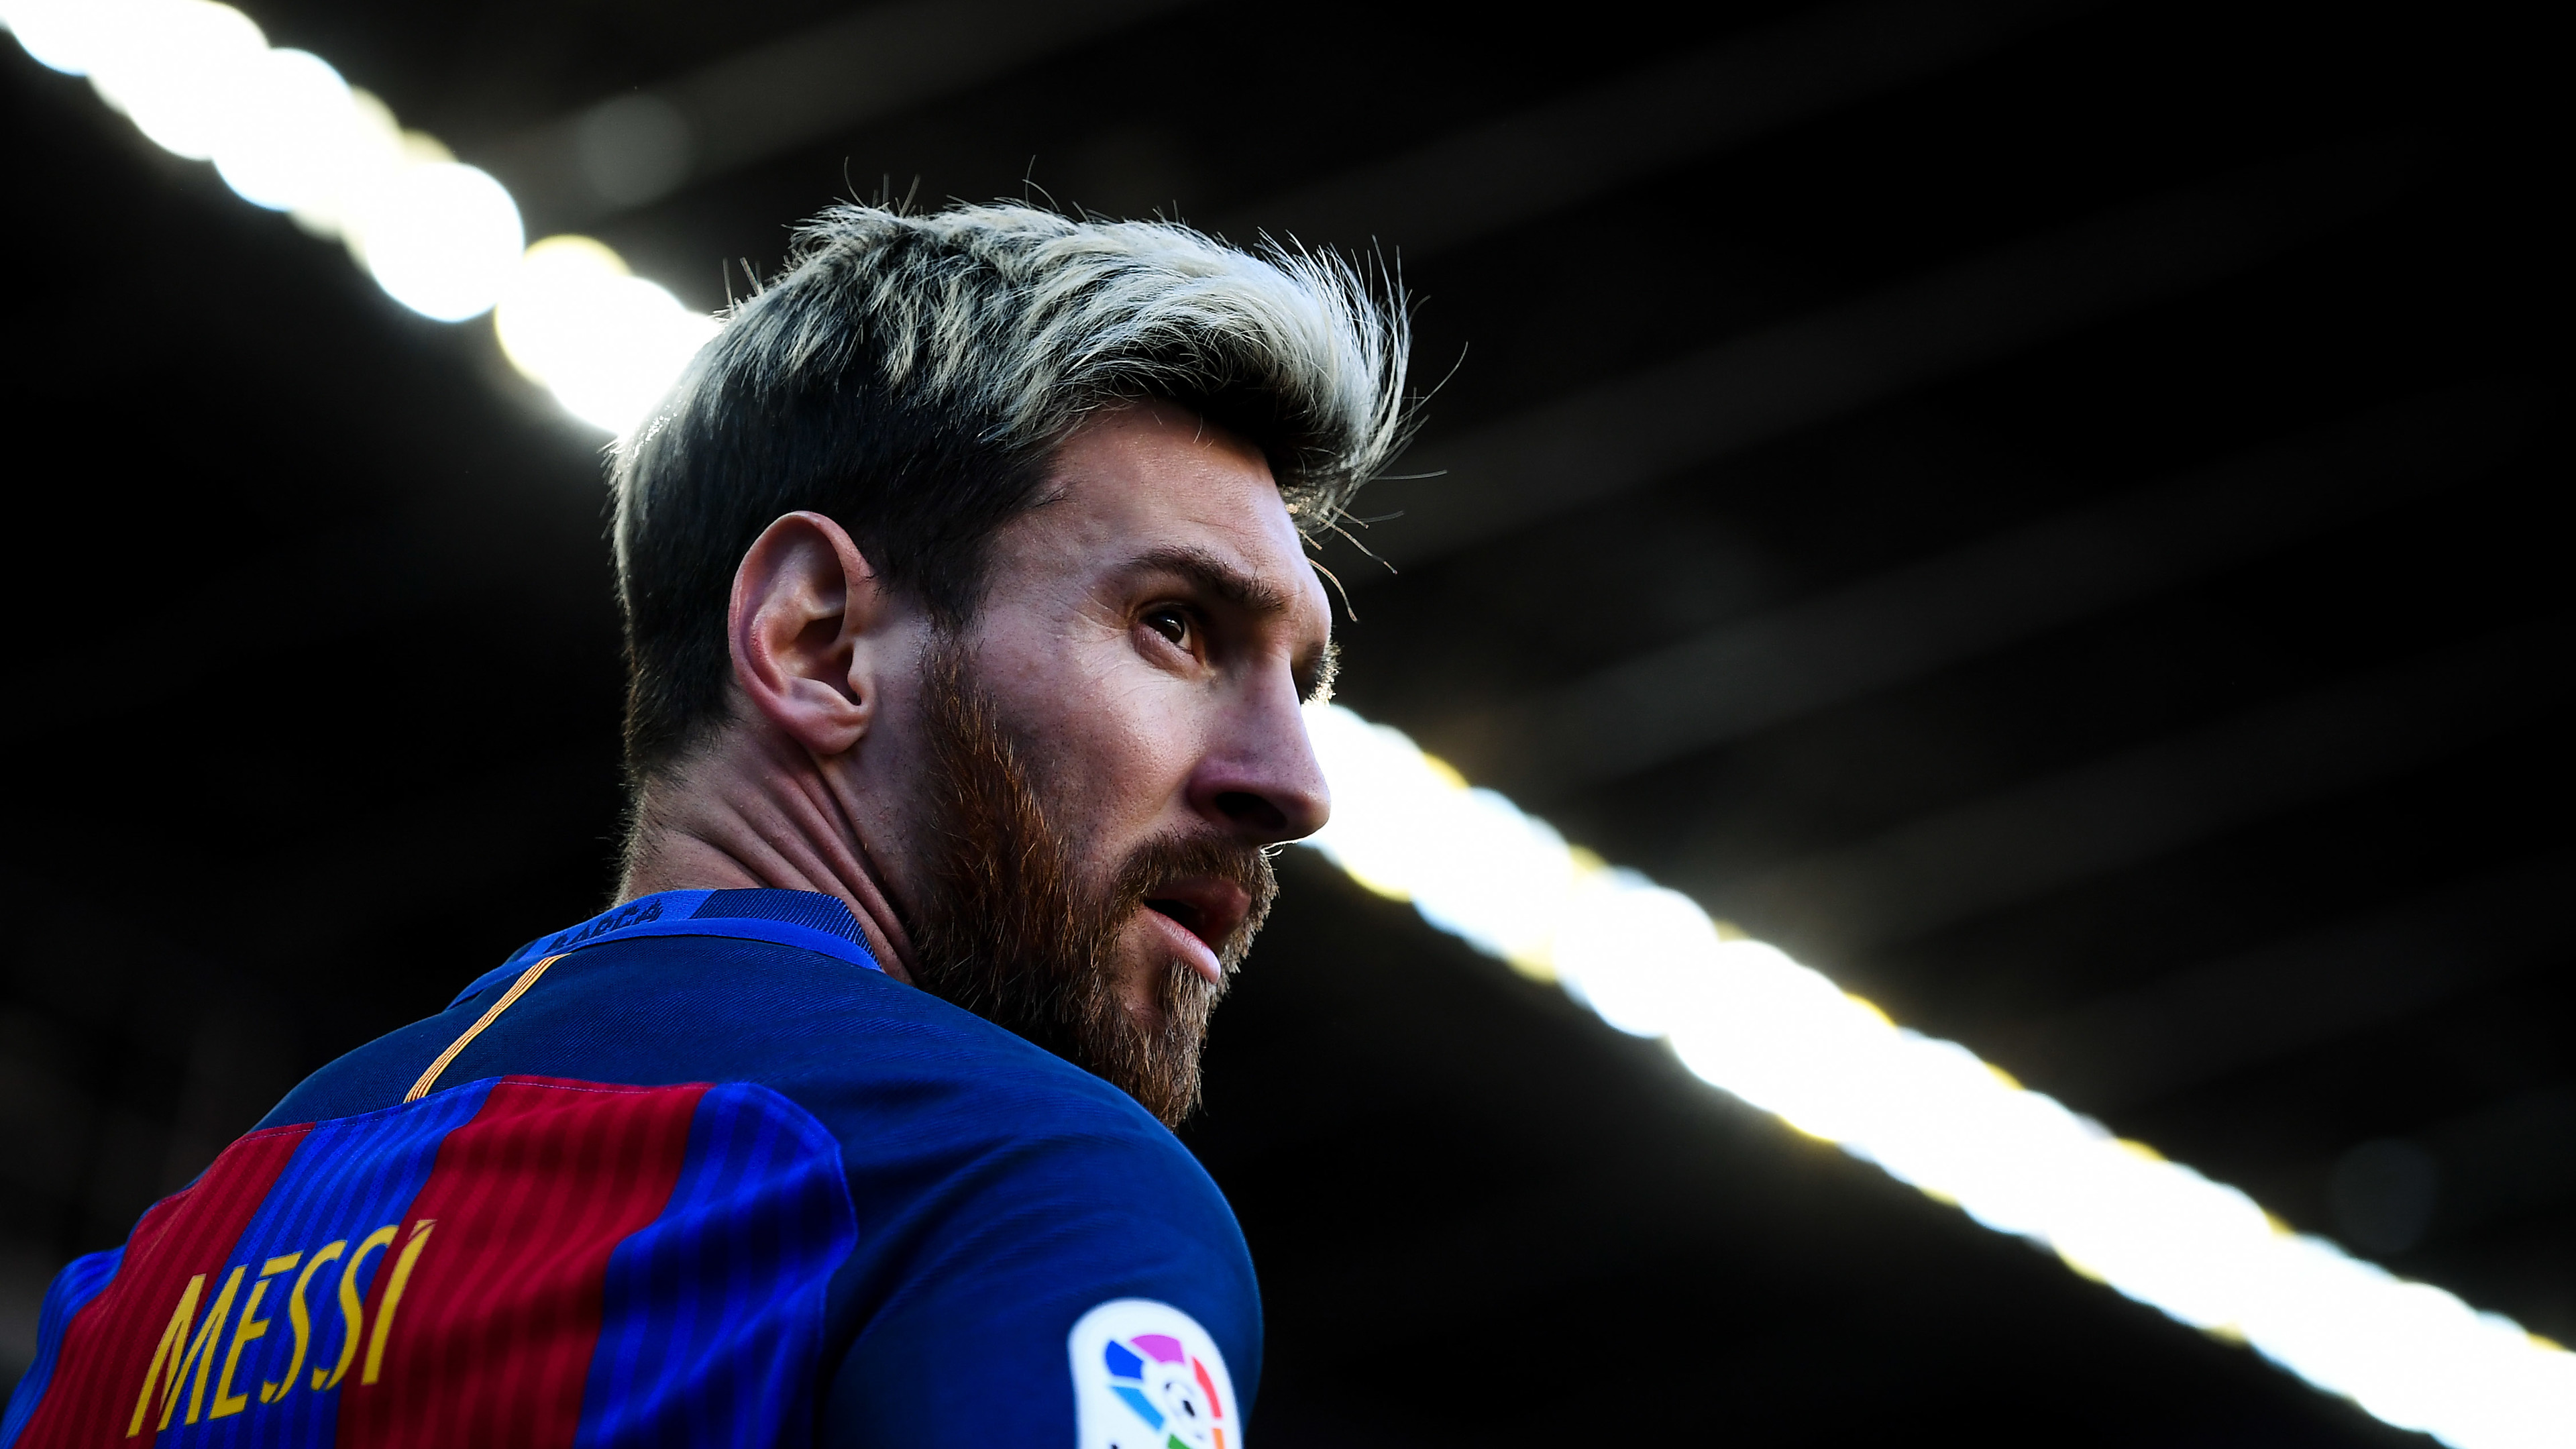 Các nhà thiết kế đã tạo ra rất nhiều hình nền Messi đẹp mắt và ấn tượng. Wallpaper Messi là một cách tuyệt vời để trang trí chiếc máy tính của bạn và đưa ra thông điệp về niềm đam mê bóng đá. Bạn sẽ không thể bỏ qua bức ảnh độc đáo này, hãy xem ngay để tìm được hình nền ưng ý nhất cho mình!